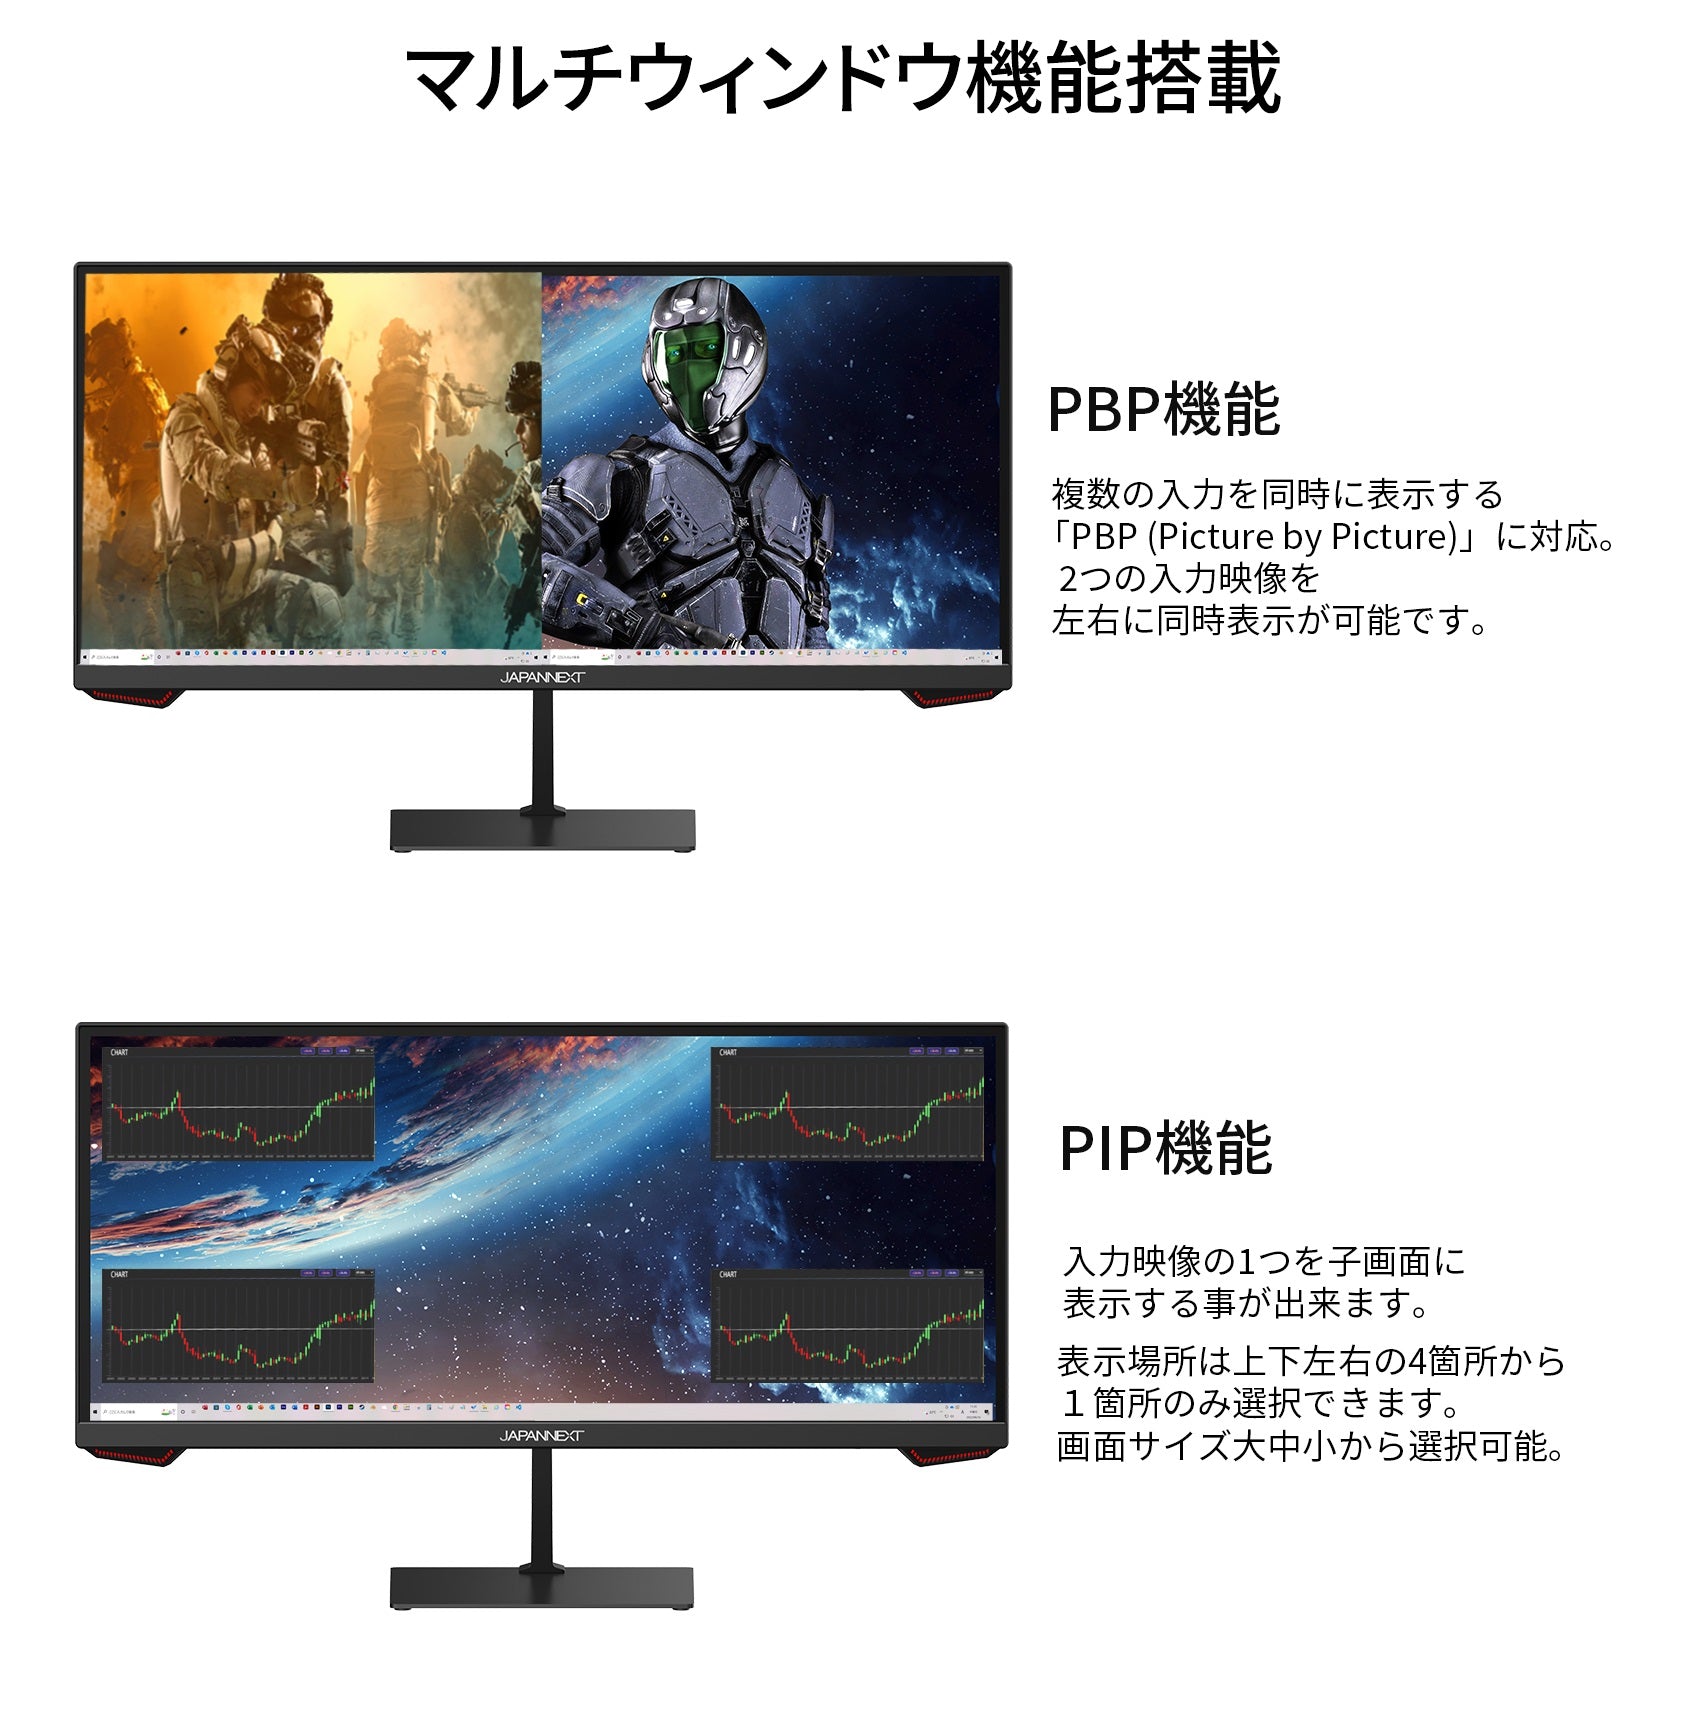 JAPANNEXT 23.3インチ ワイドFHD(2560 x 1080) 200Hz対応 ゲーミングモニター JN-VG233WFHD200  HDMI DP ウルトラワイド PIP PBP対応